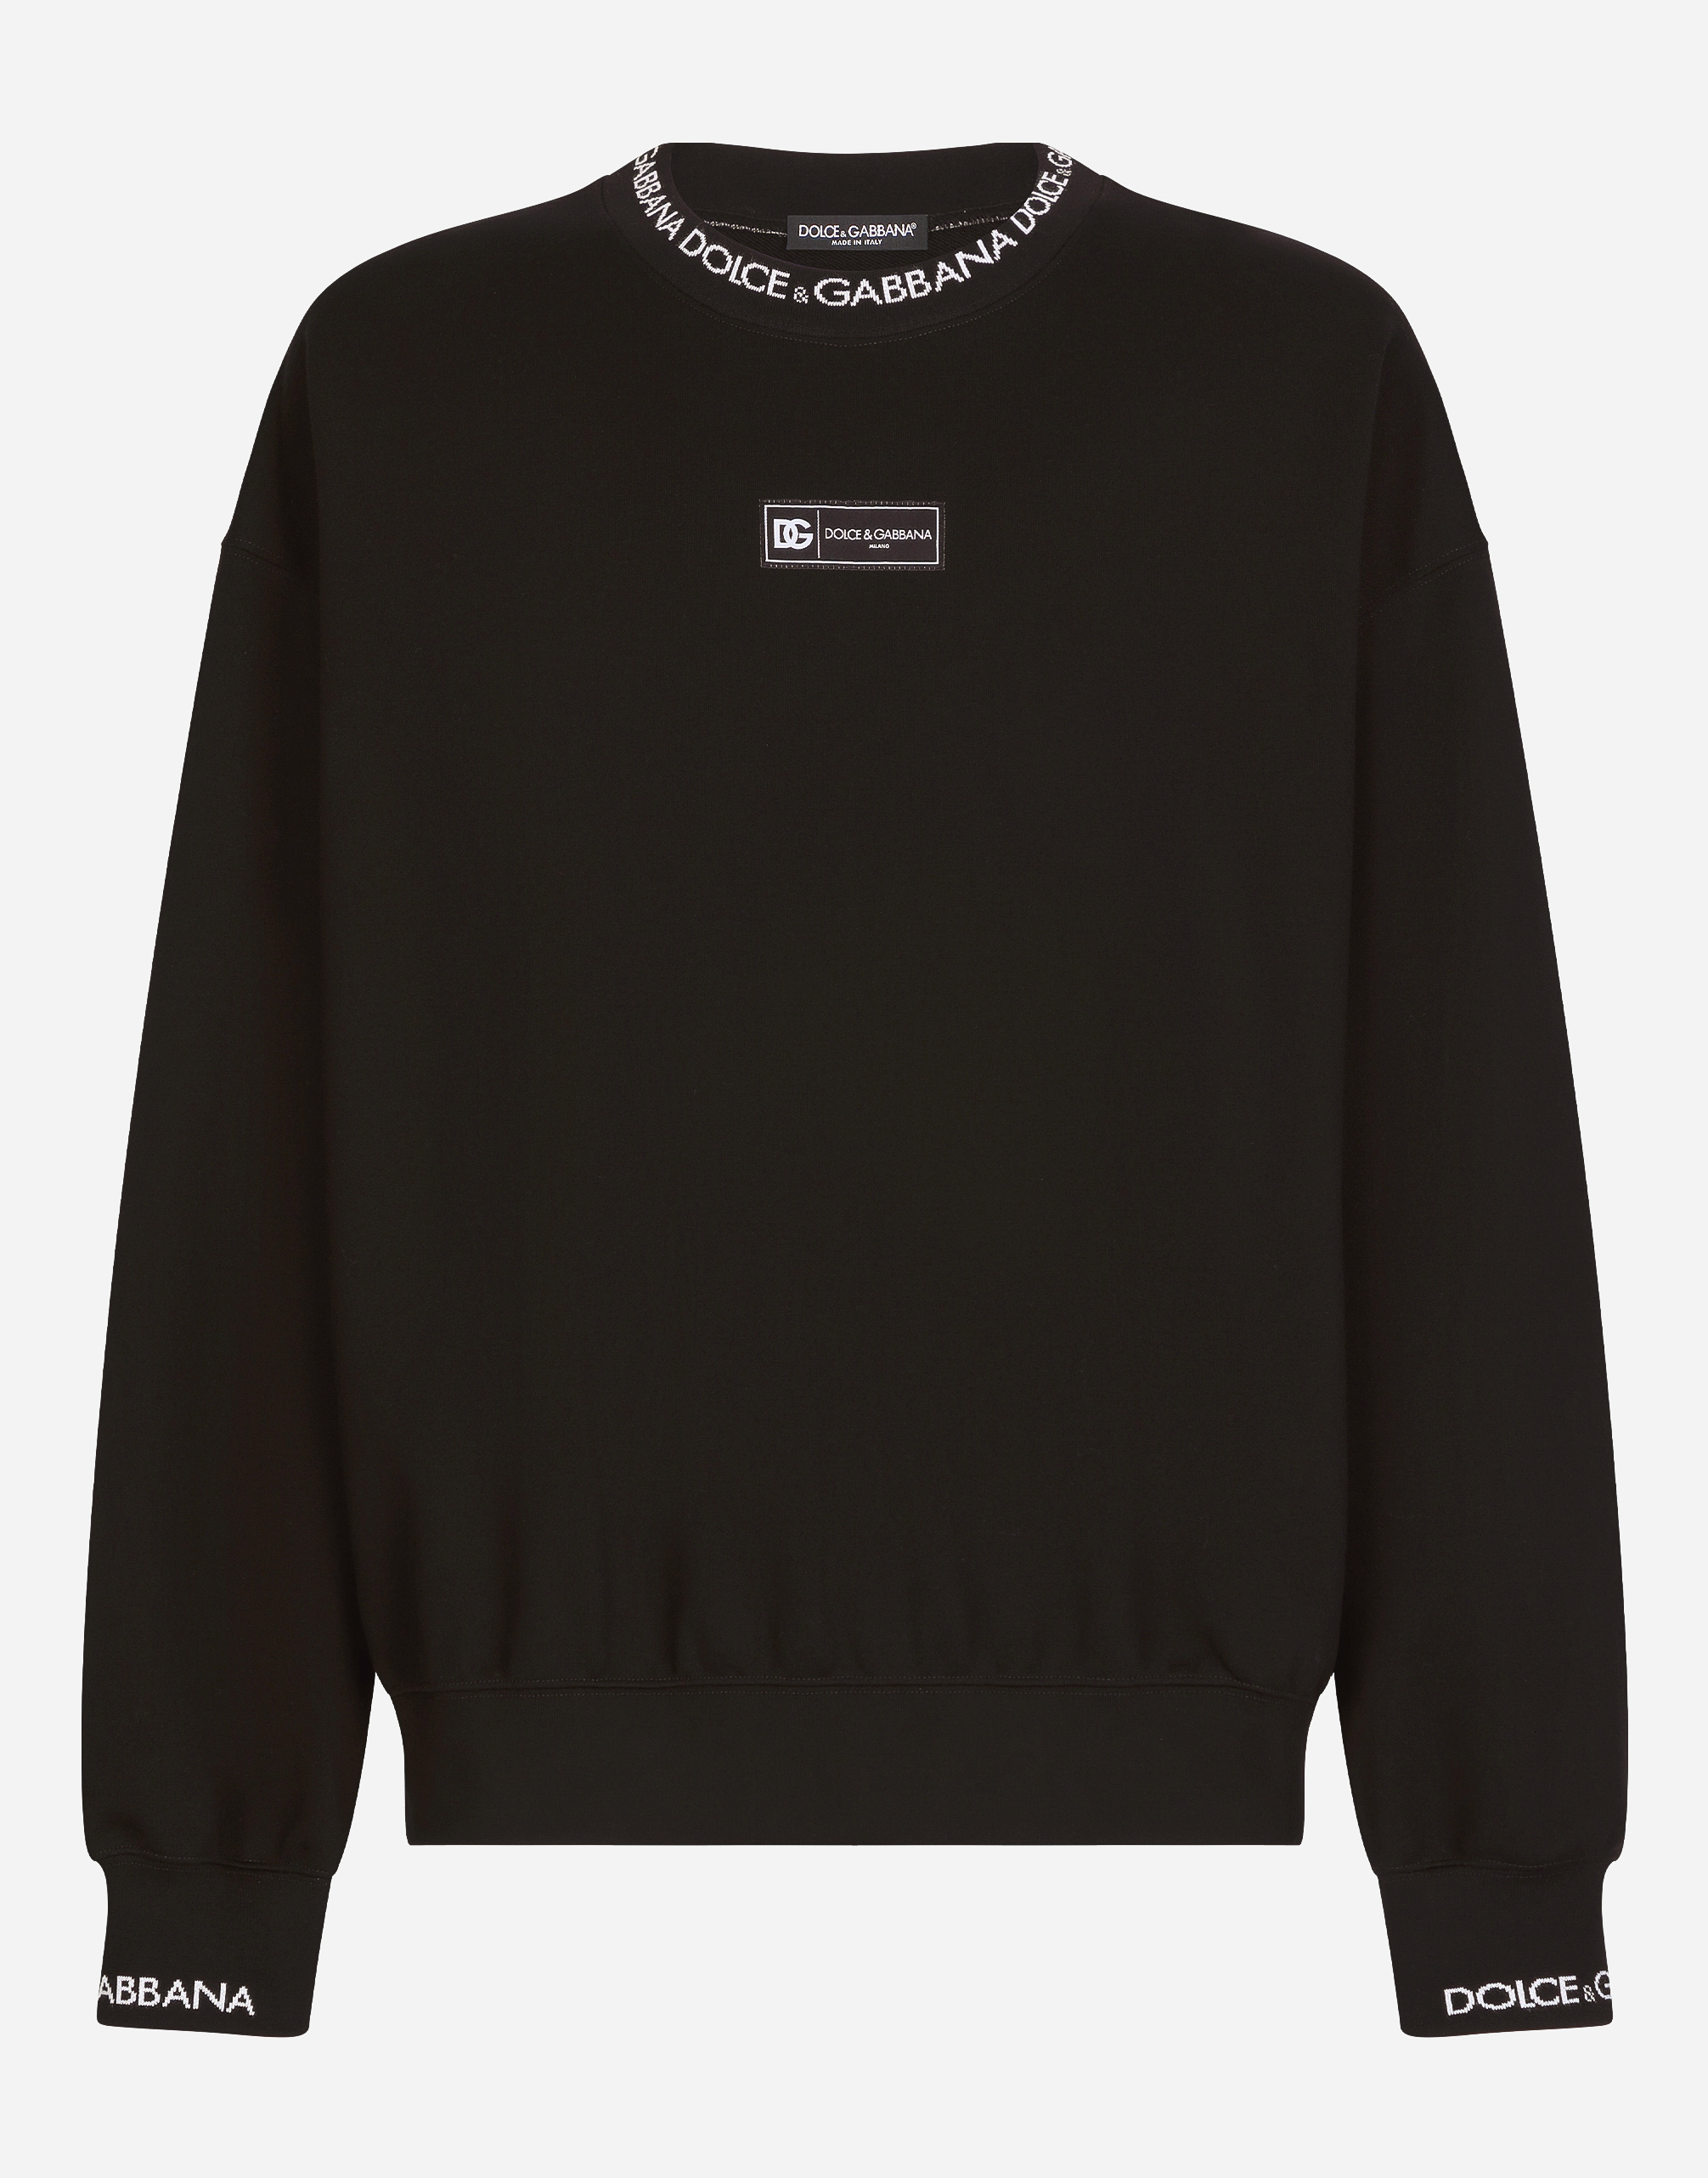 Round-neck sweatshirt with Dolce&Gabbana logo